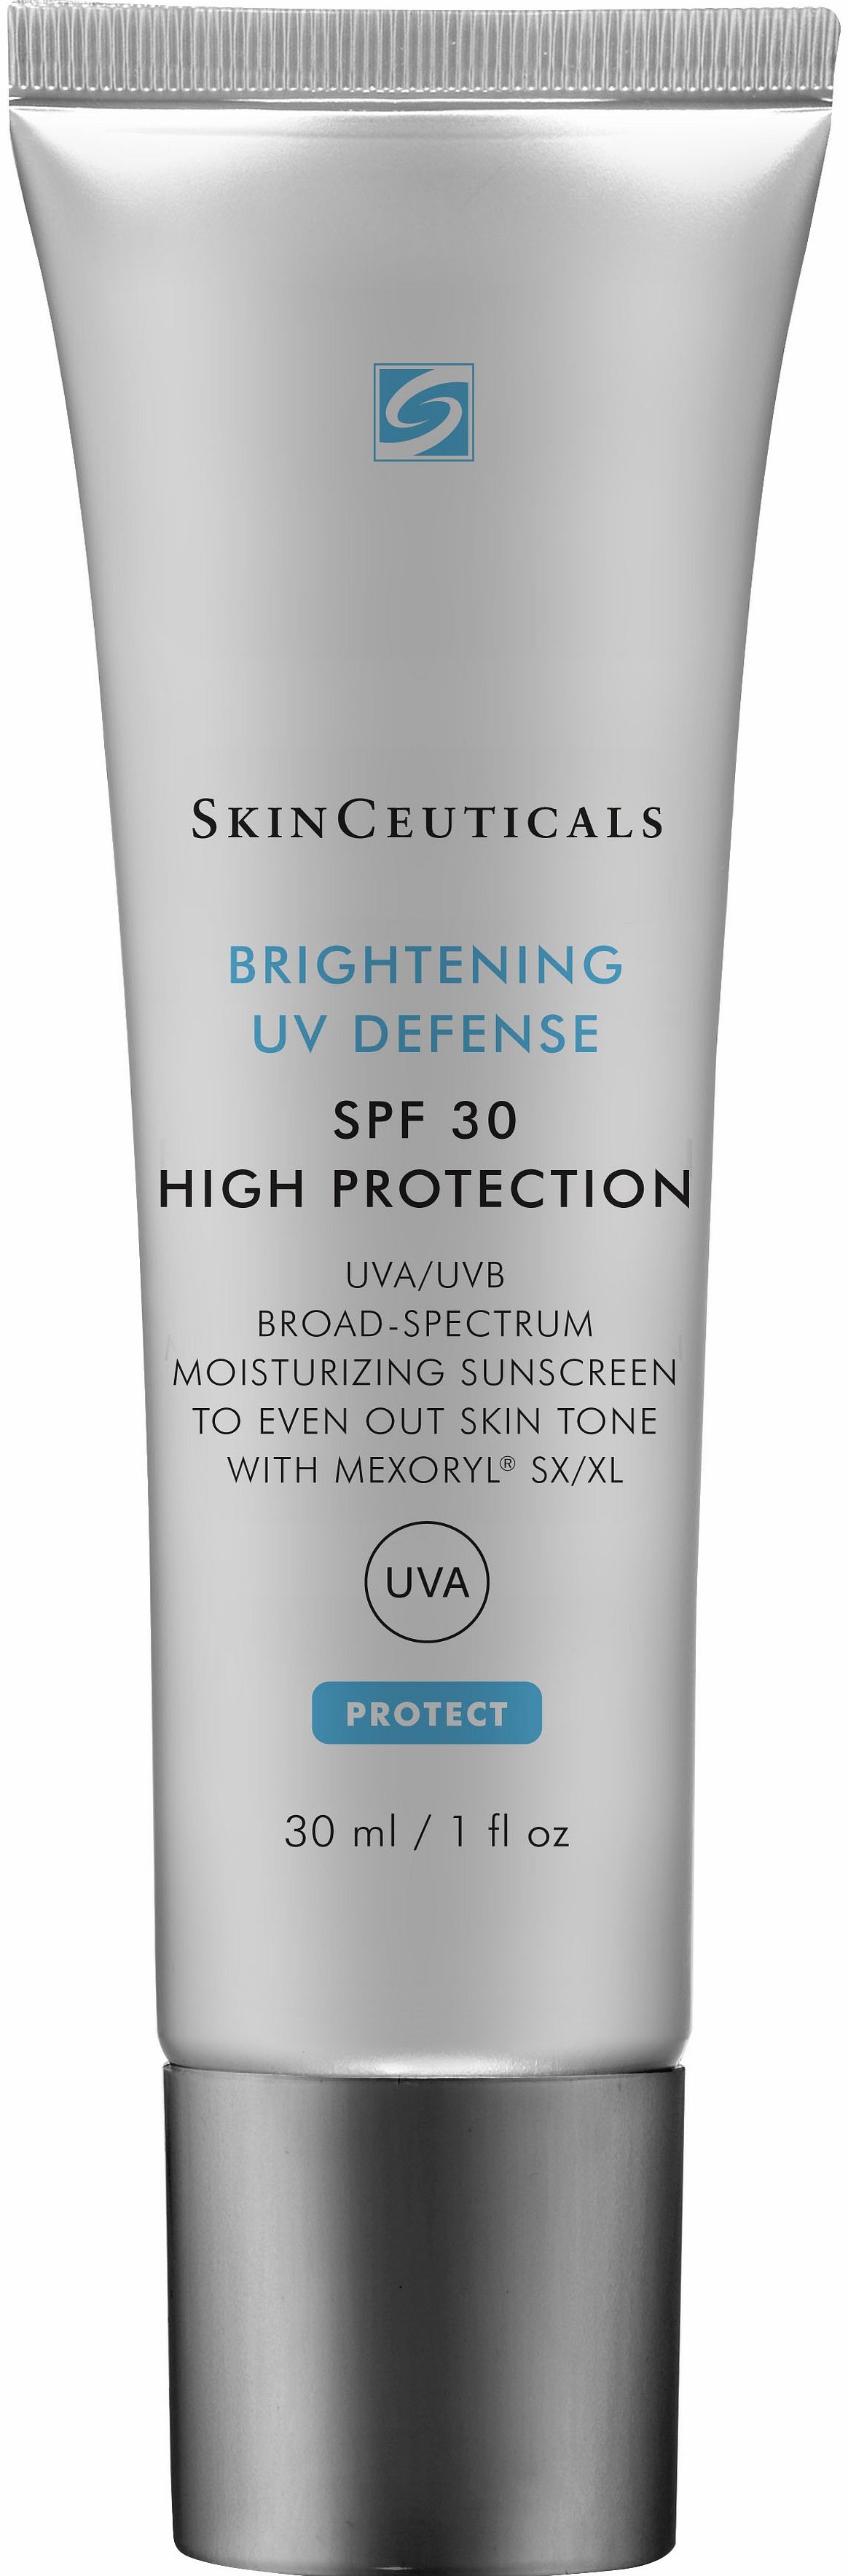 Brightening UV Defense SPF30 - 30ml